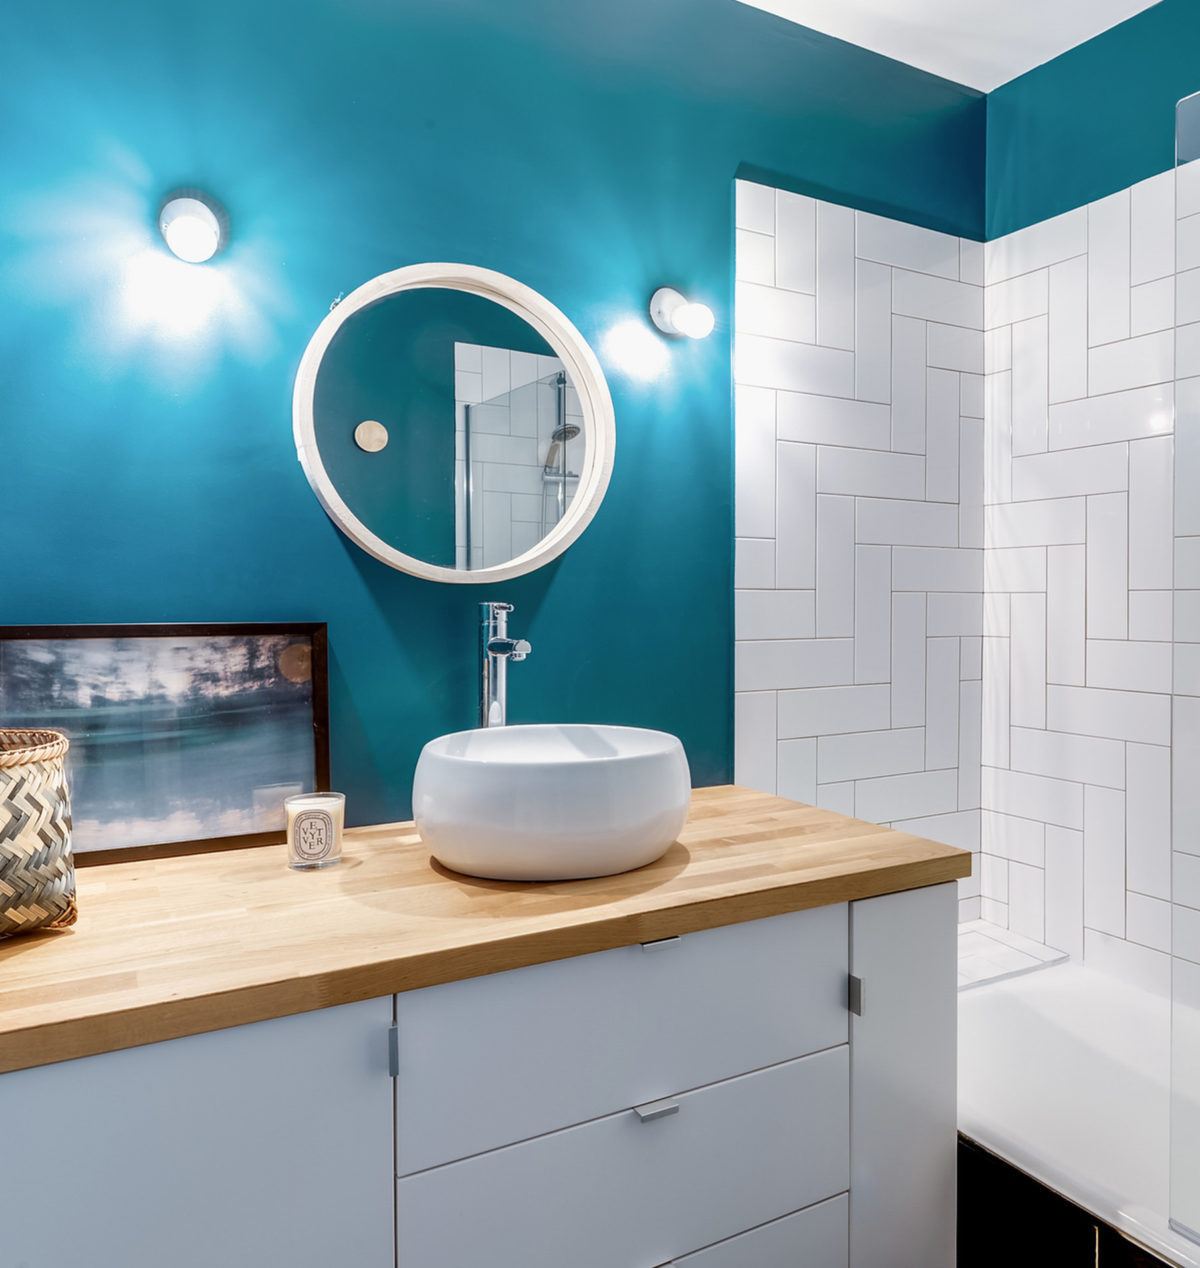 blog déco salle de bain mur bleu carrelage géométrique meuble ikea hack